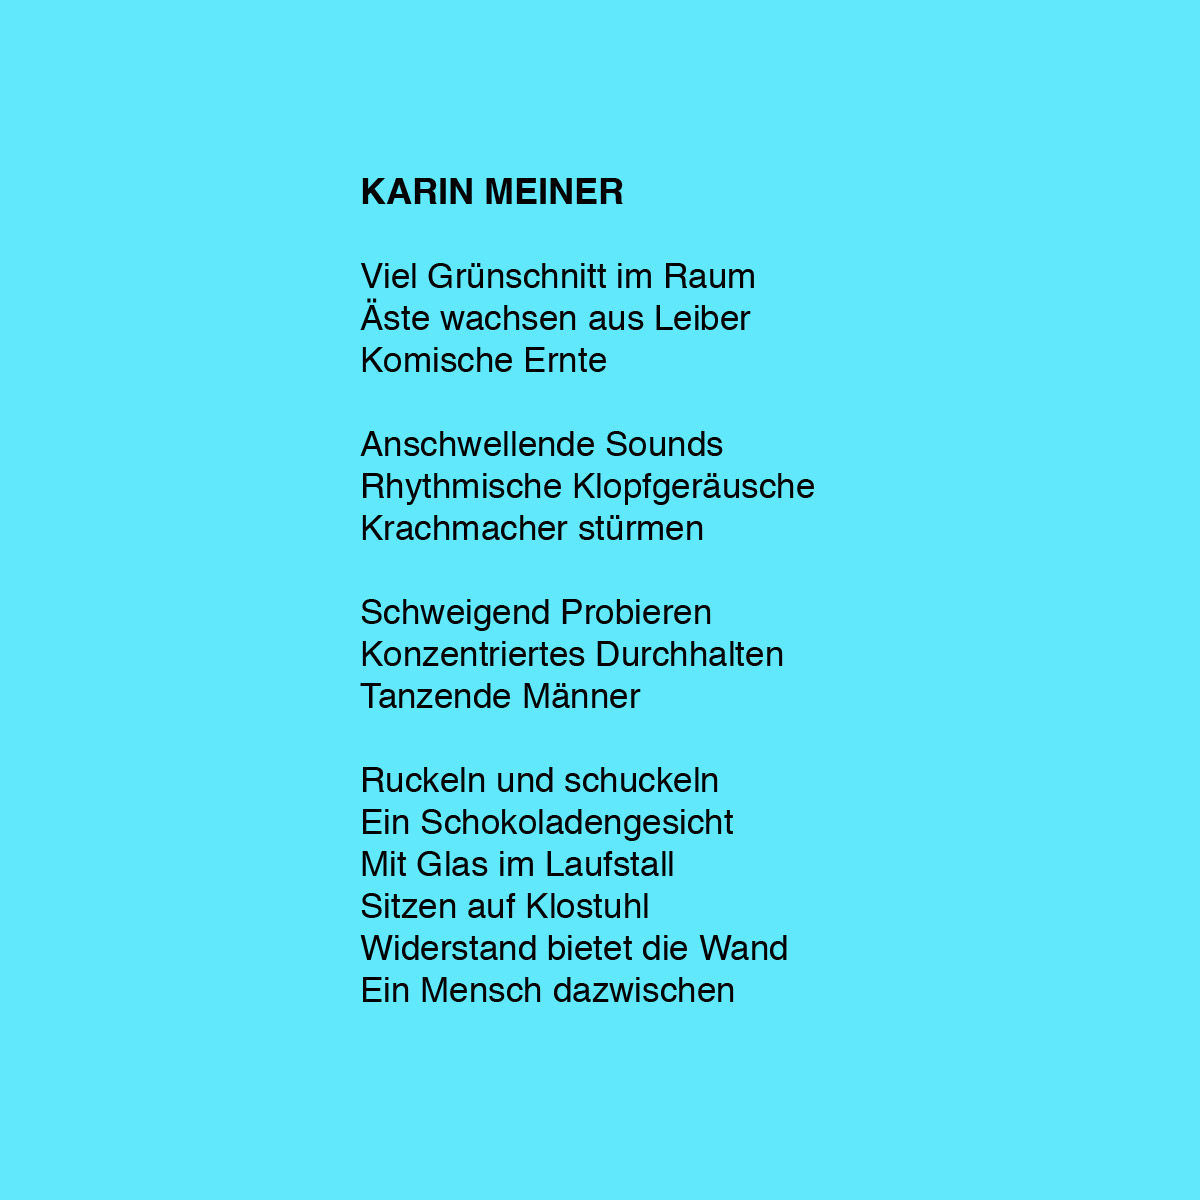 KarinMeiner